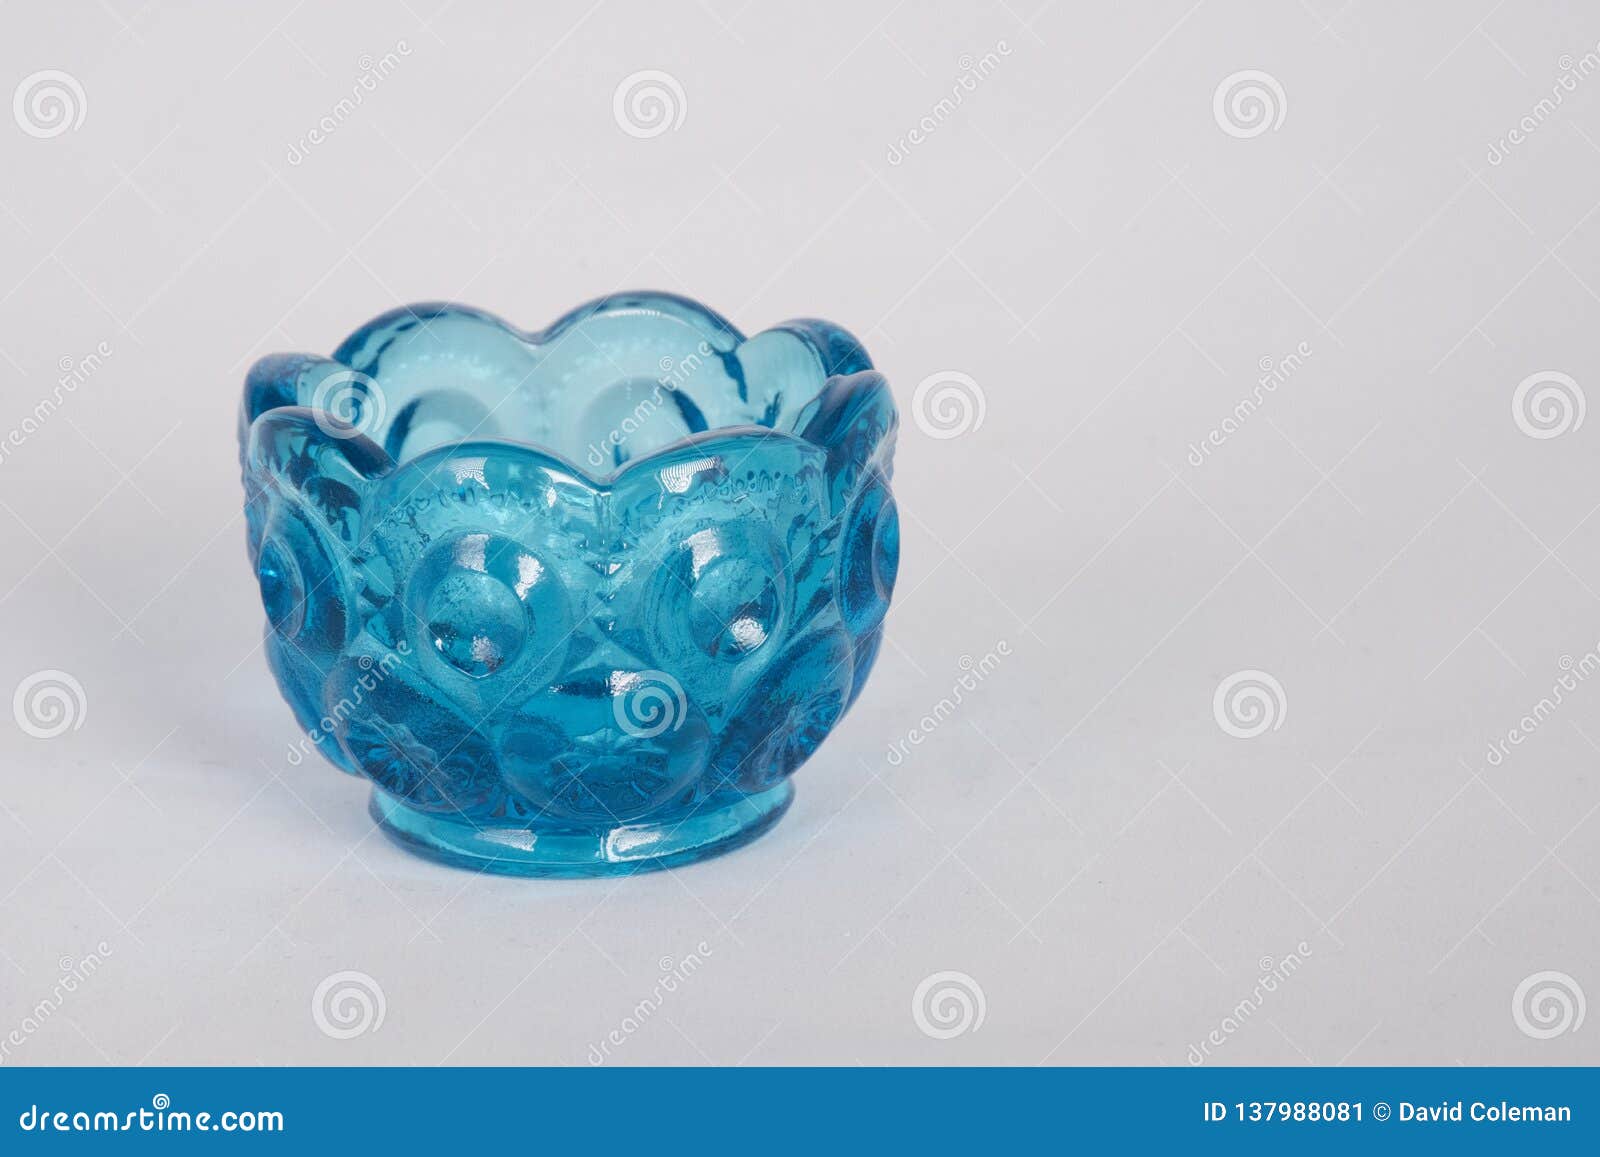 Mały błękitny szklany puchar na bielu. Mały atrakcyjny do kolekcjonowania dekoracyjny szklany puchar z scalloped obręczem i wzorzystym szkłem